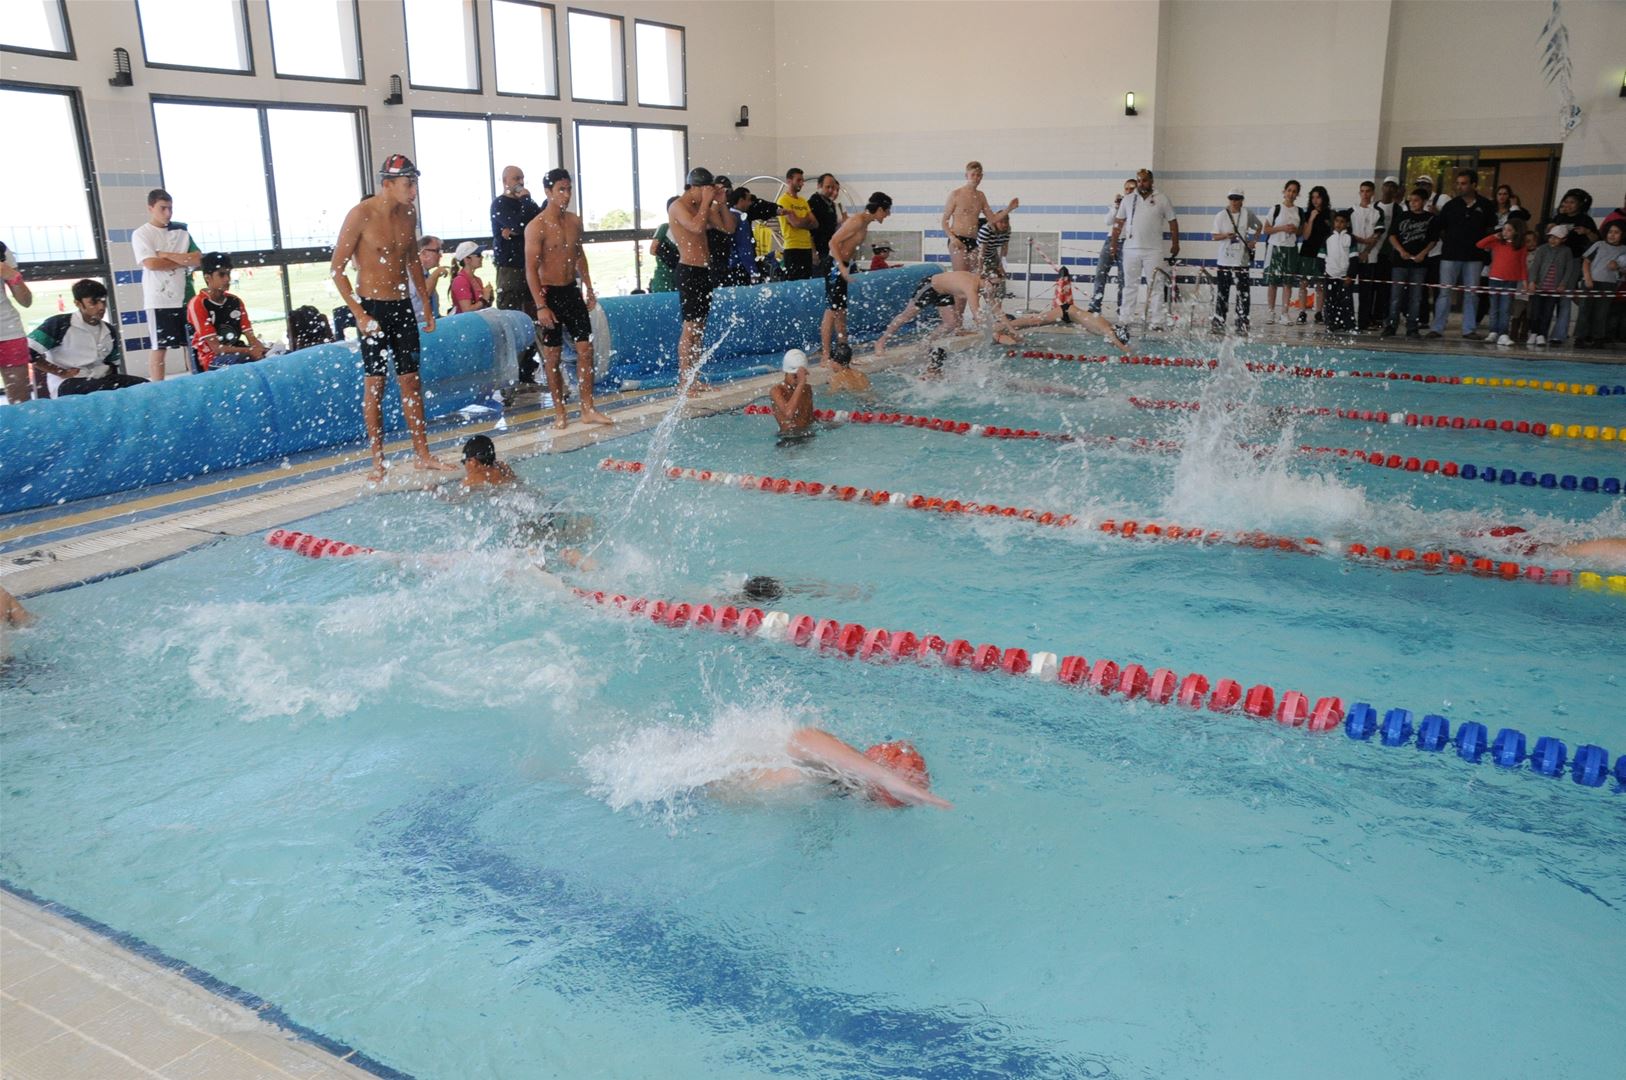 Lebanon 2011 - Swimming - SABIS® 12th Regional Tournament Bahrain 2019